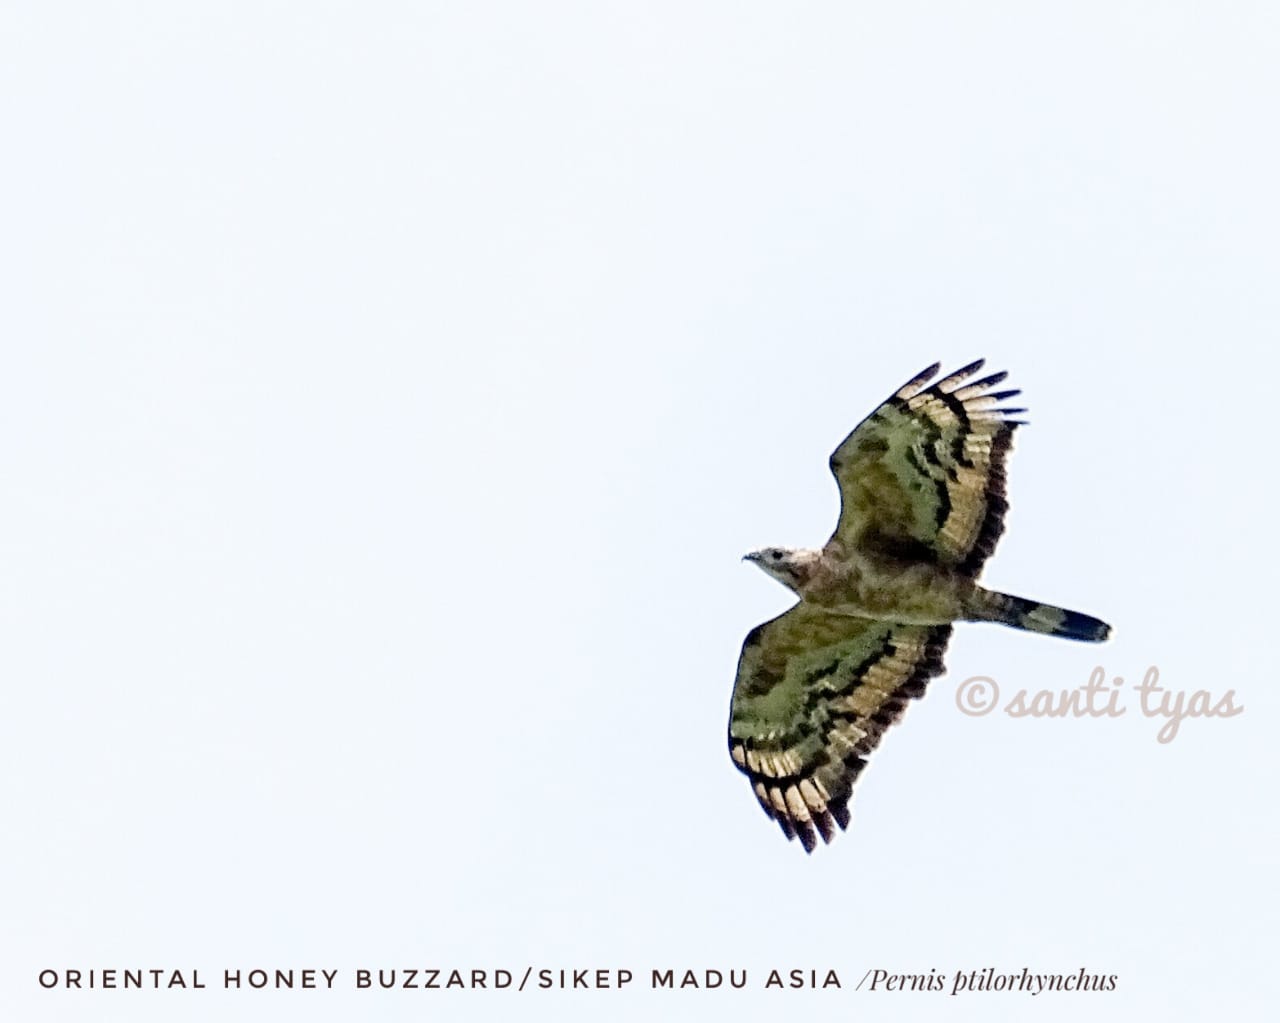 Sikep-madu Asia (Pernis ptilorhyncus/Oriental Honey-buzzard) salah satu jenis burung migran yang paling banyak dan sering melewati Gunung Sega, Karangasem, Bali. Foto : Santi Tyas/Mongabay Indonesia